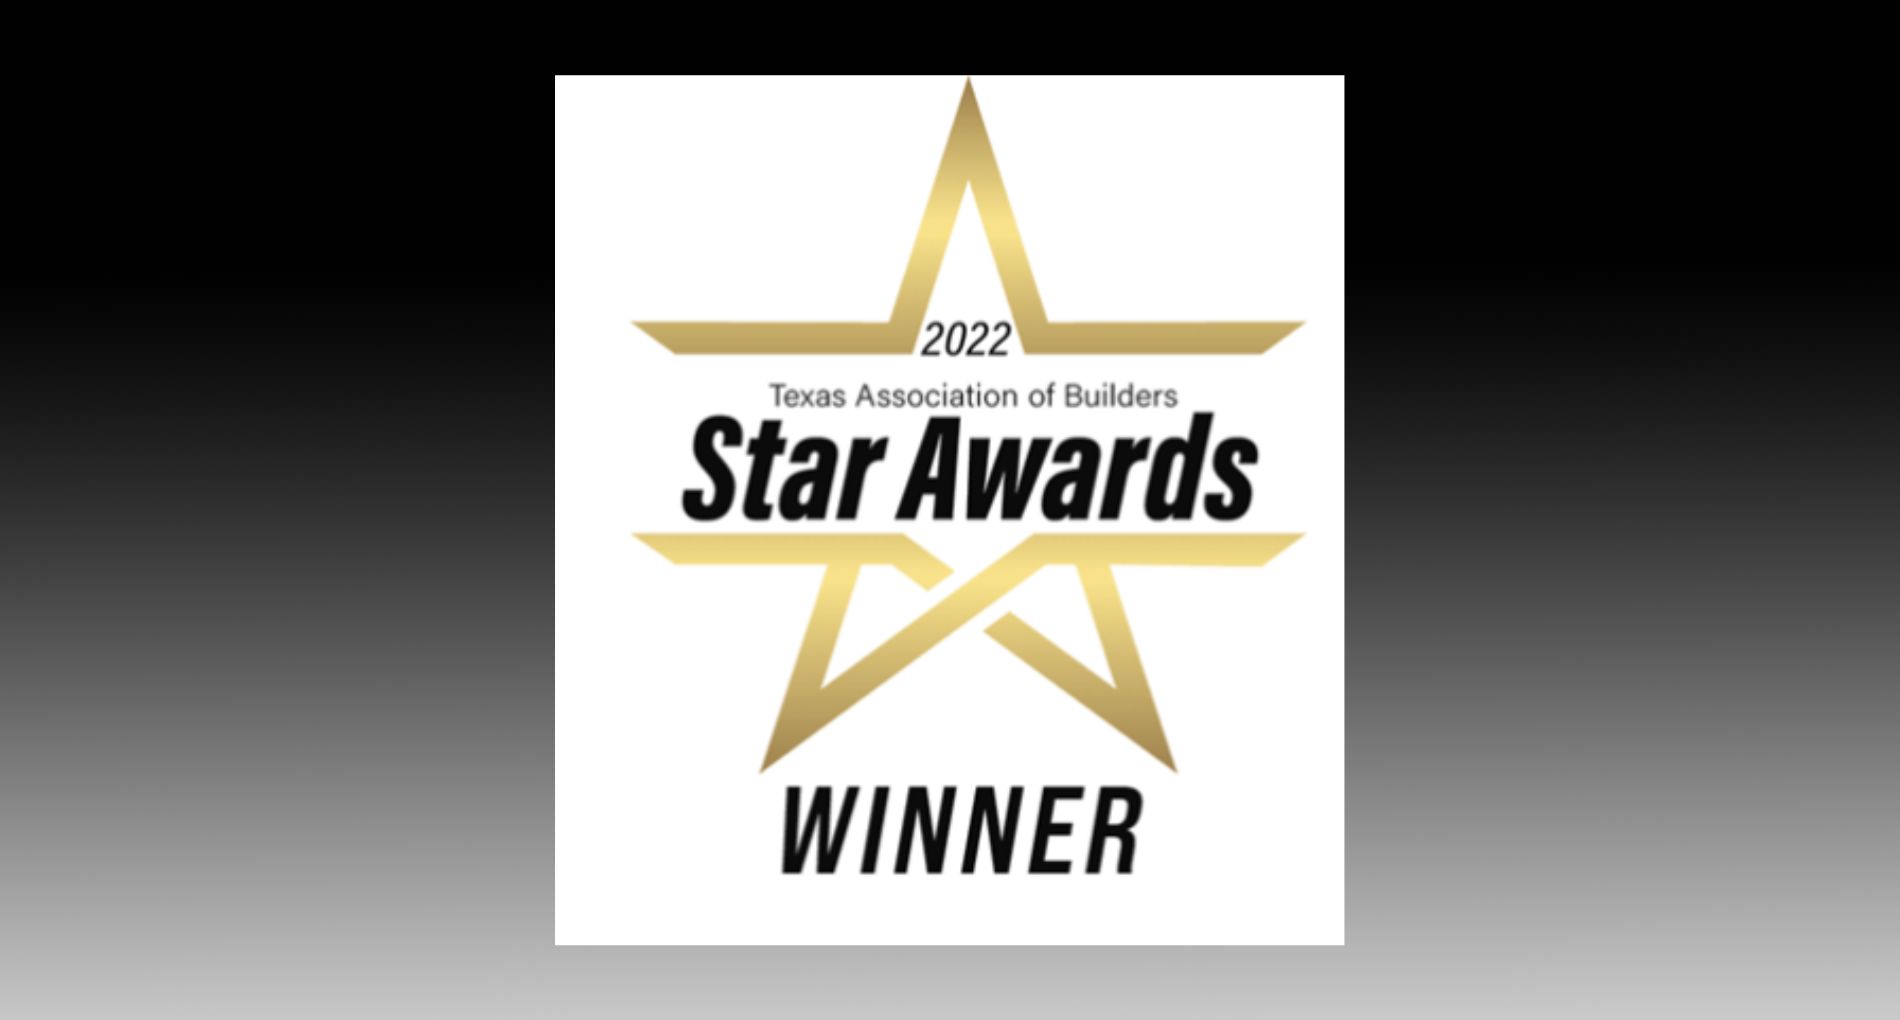 Texas Association of Builders 2022 Star Awards Winner